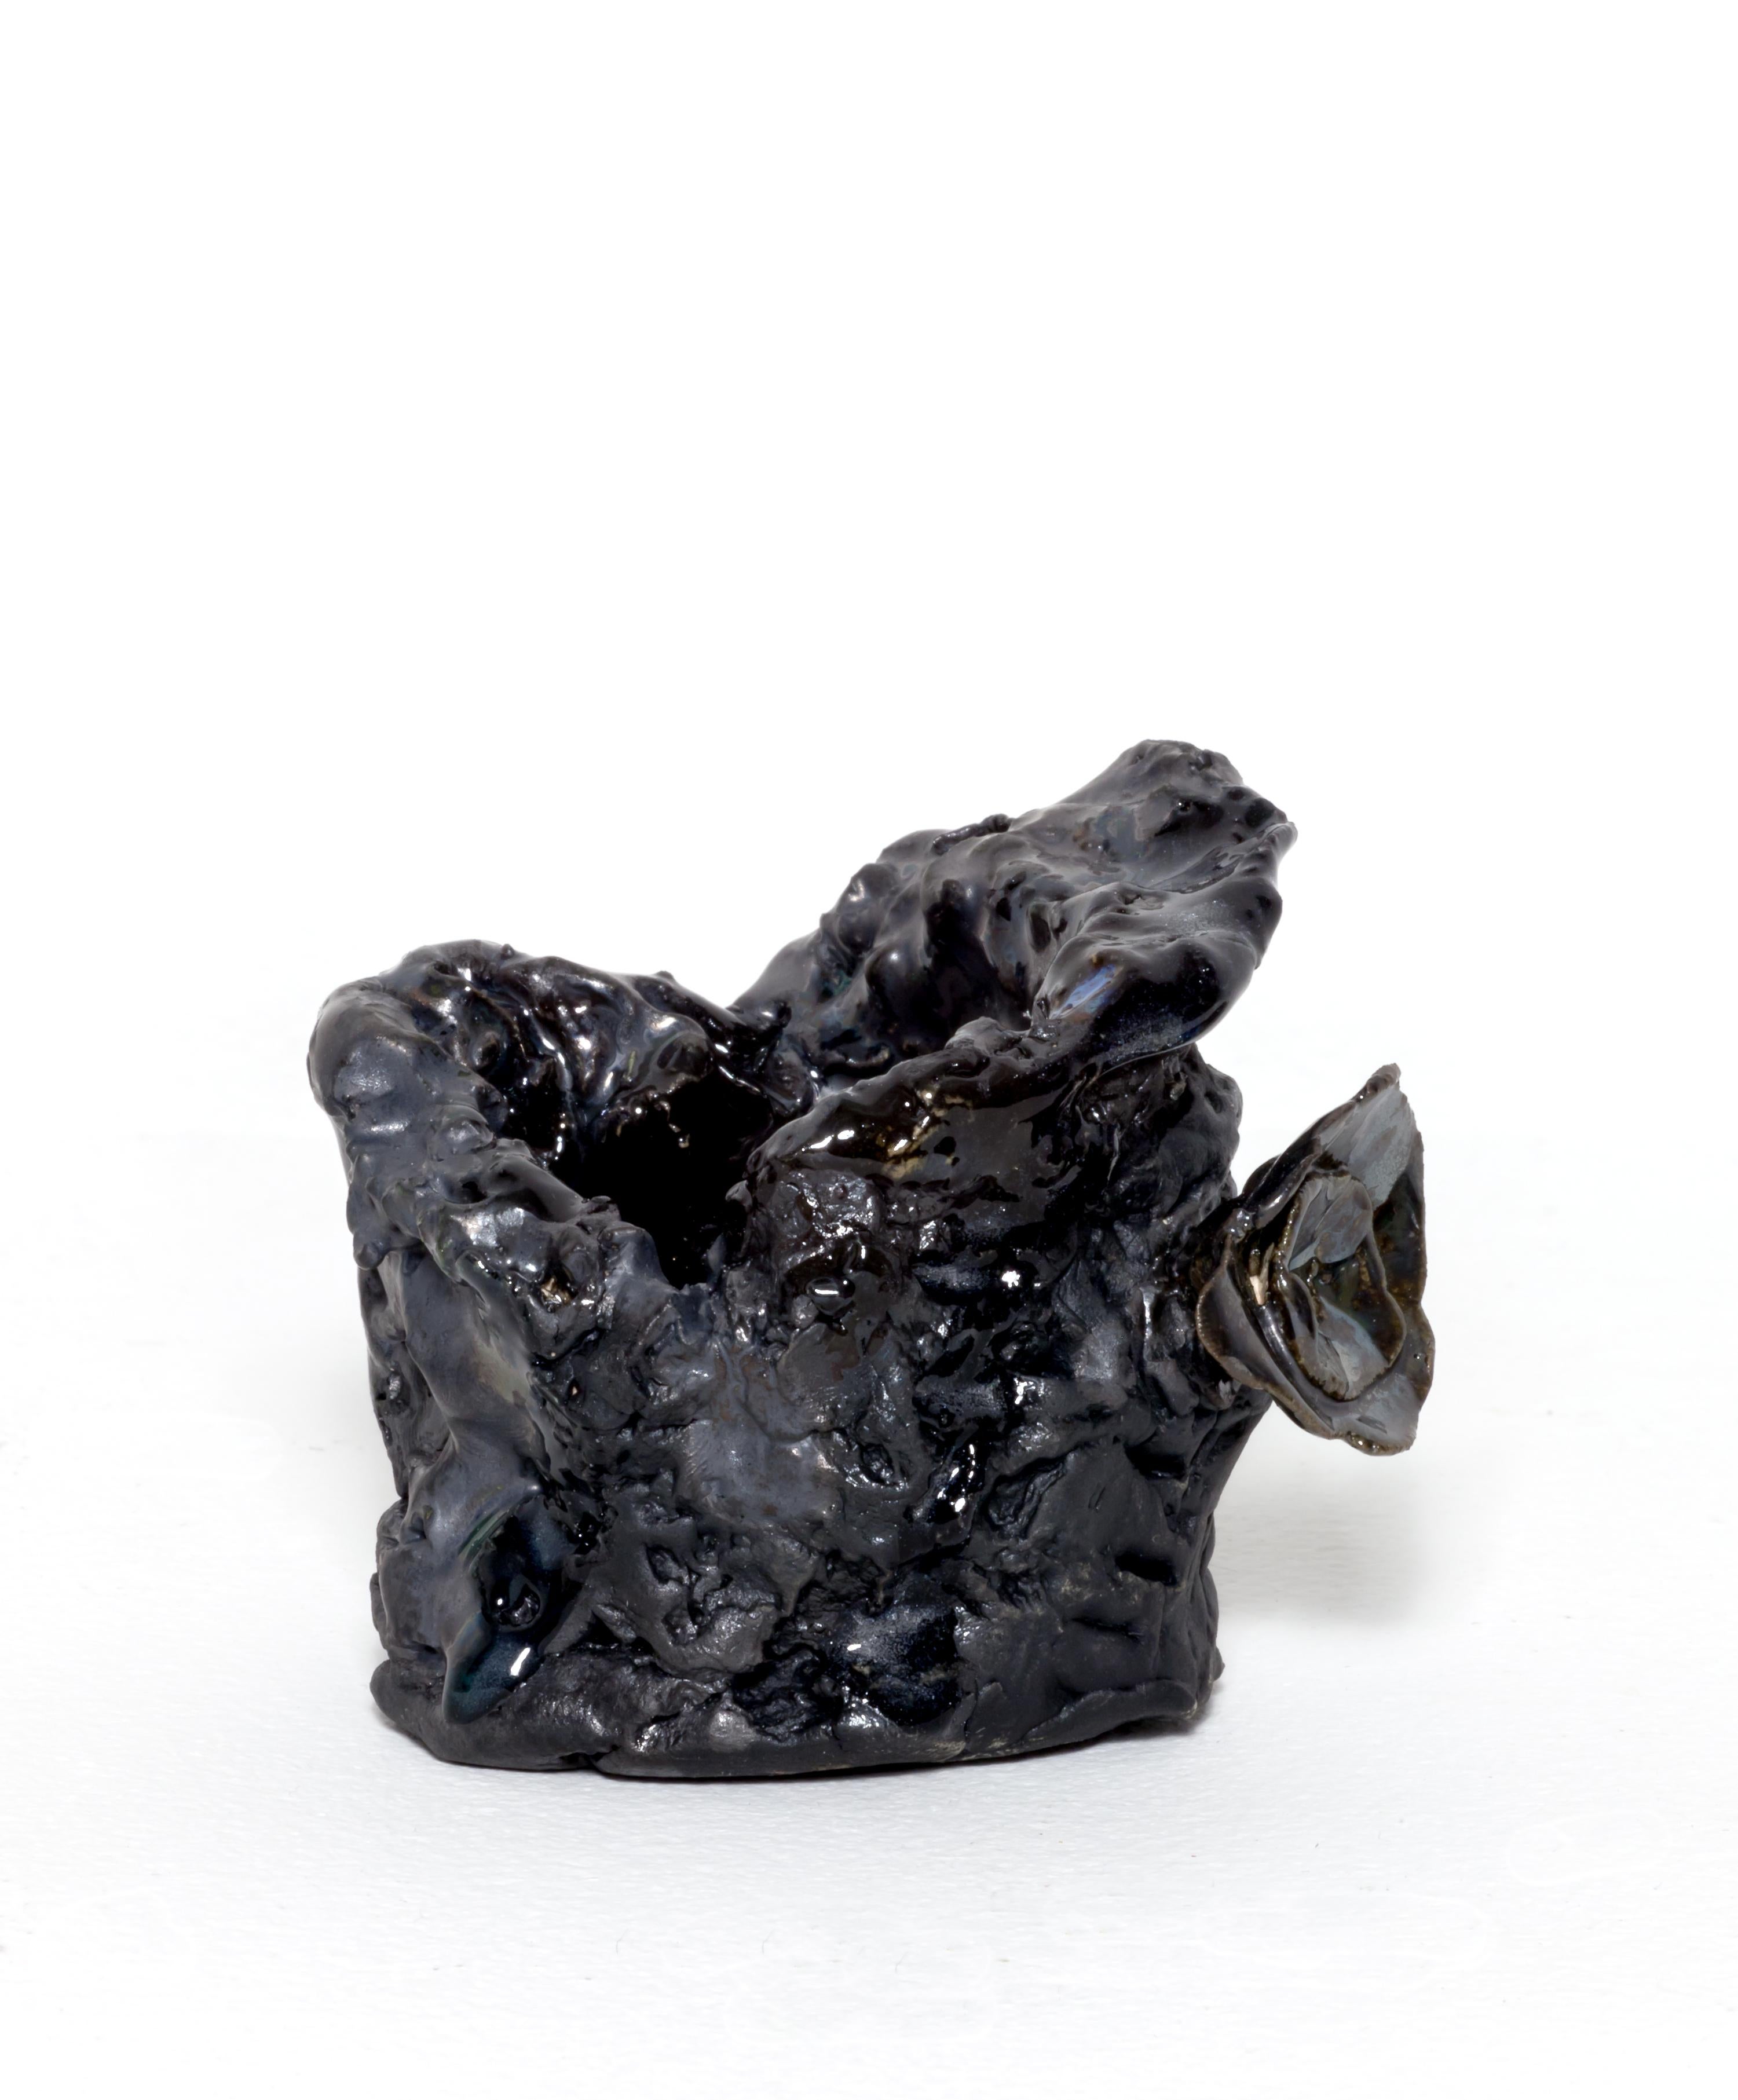 Lava Cup 2 - Sculpture by Lisa Sanditz